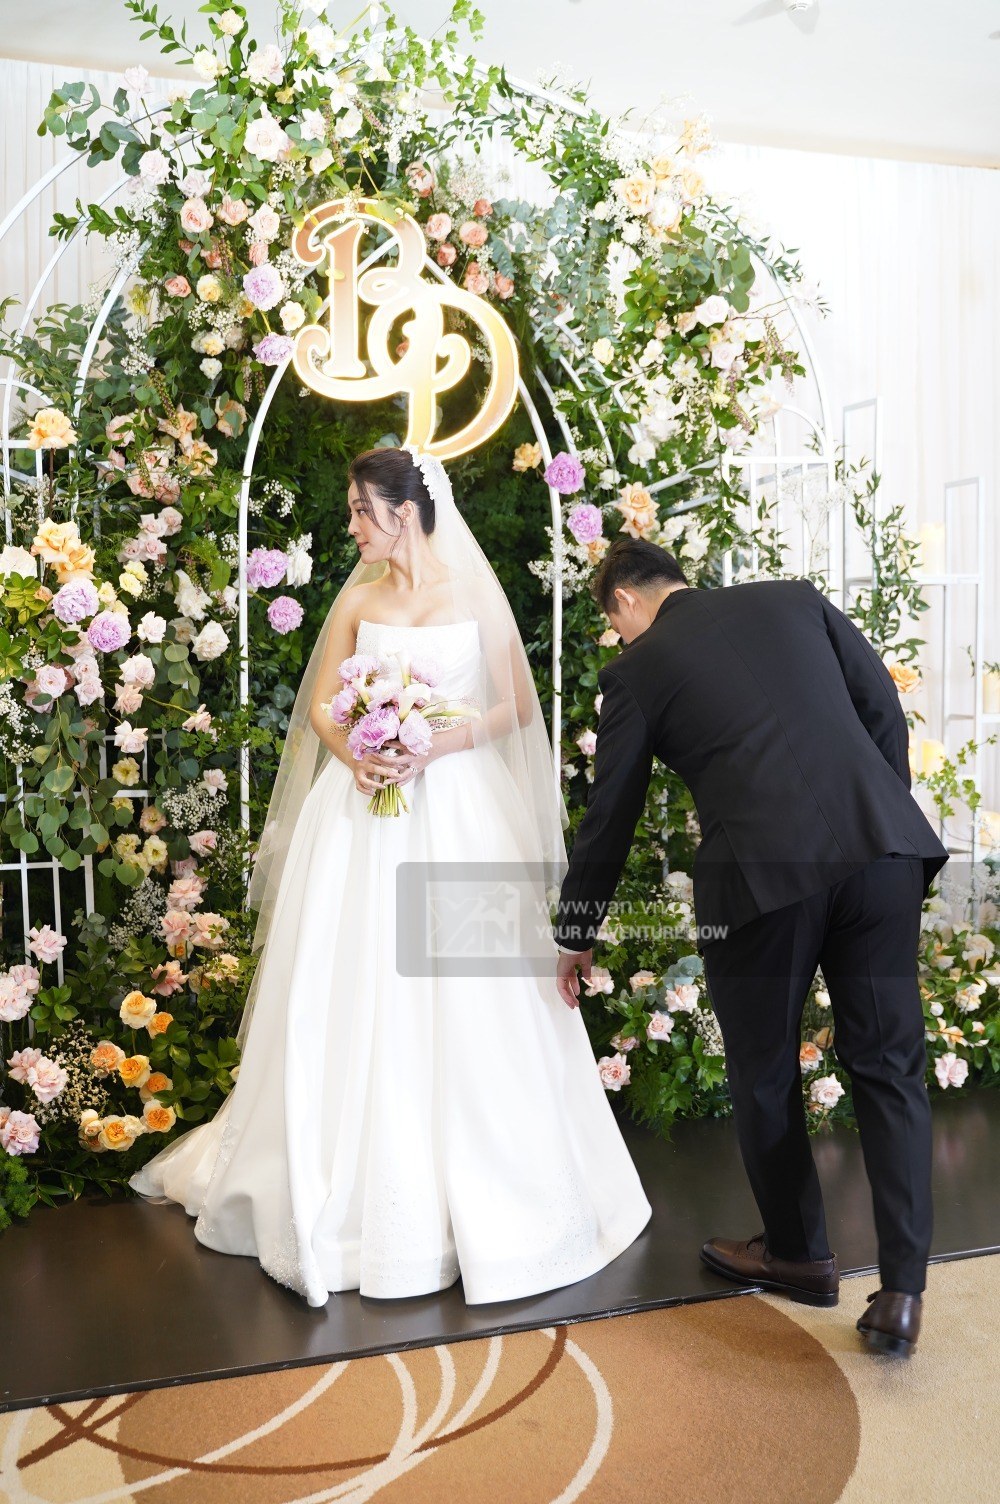  
Chồng doanh nhân chăm sóc cho cô dâu trong đám cưới. (Ảnh: Team Ân Nguyễn)